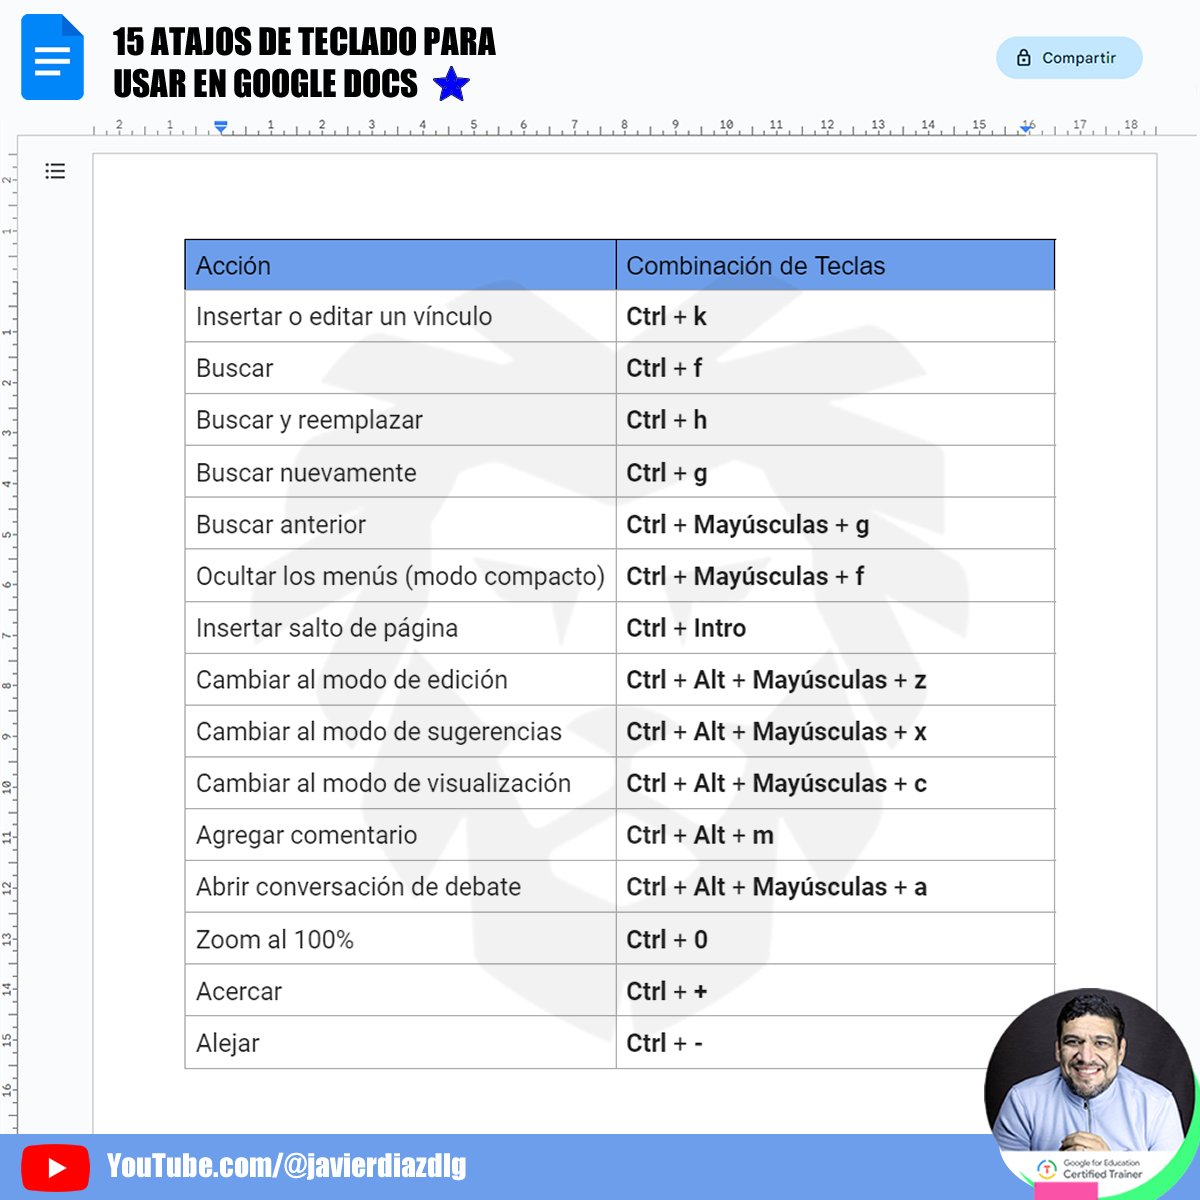 🚀 ¡Maximiza tu productividad con Google Docs! 🚀

¿Quieres hacer tu trabajo más sencillo y ahorrar tiempo al utilizar Google Docs? ¡Entonces, necesitas conocer estos 15 atajos de teclado que te convertirán en un maestro de la edición de documentos! 📄💡

#GoogleCT #Trainer